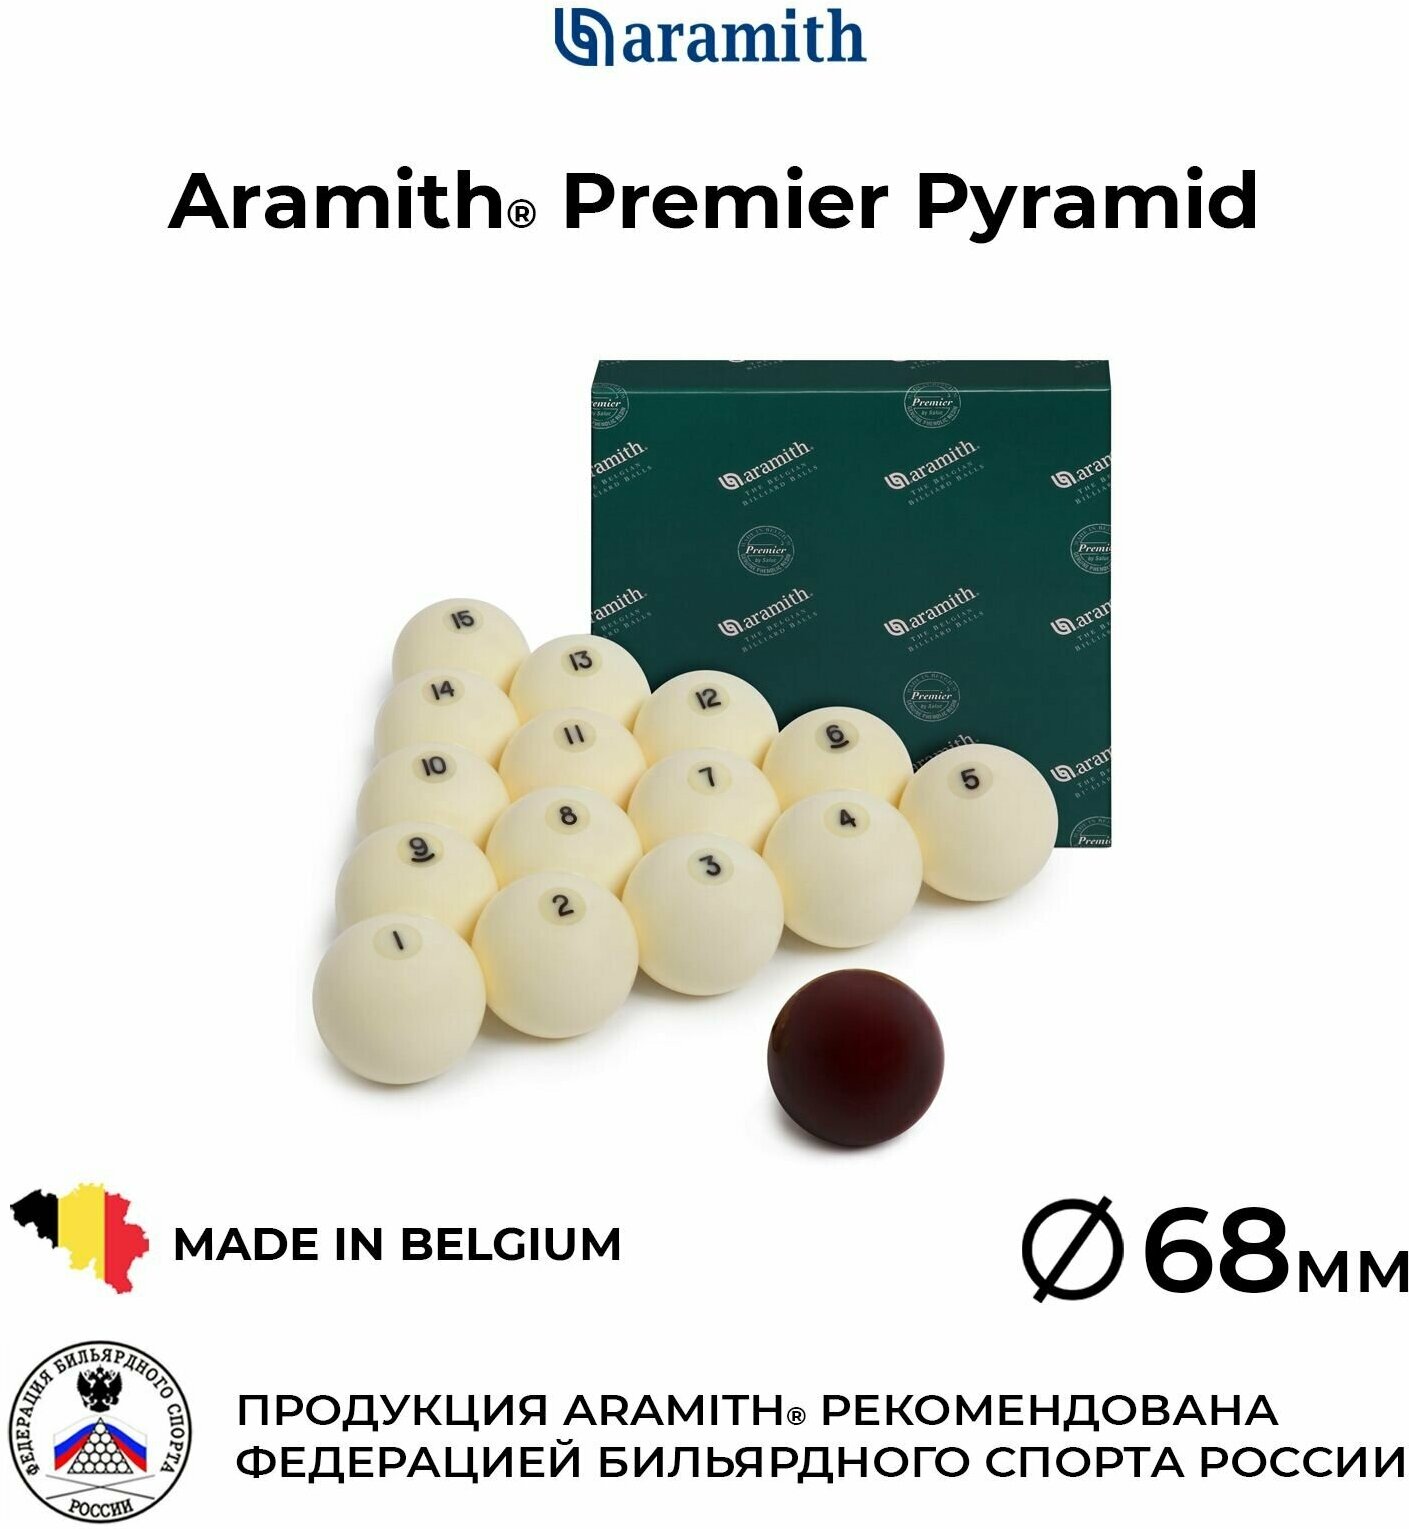 Бильярдные шары Арамит Премьер 68 мм для русской пирамиды / Aramith Premier Pyramid 68 мм красный биток 16 шаров